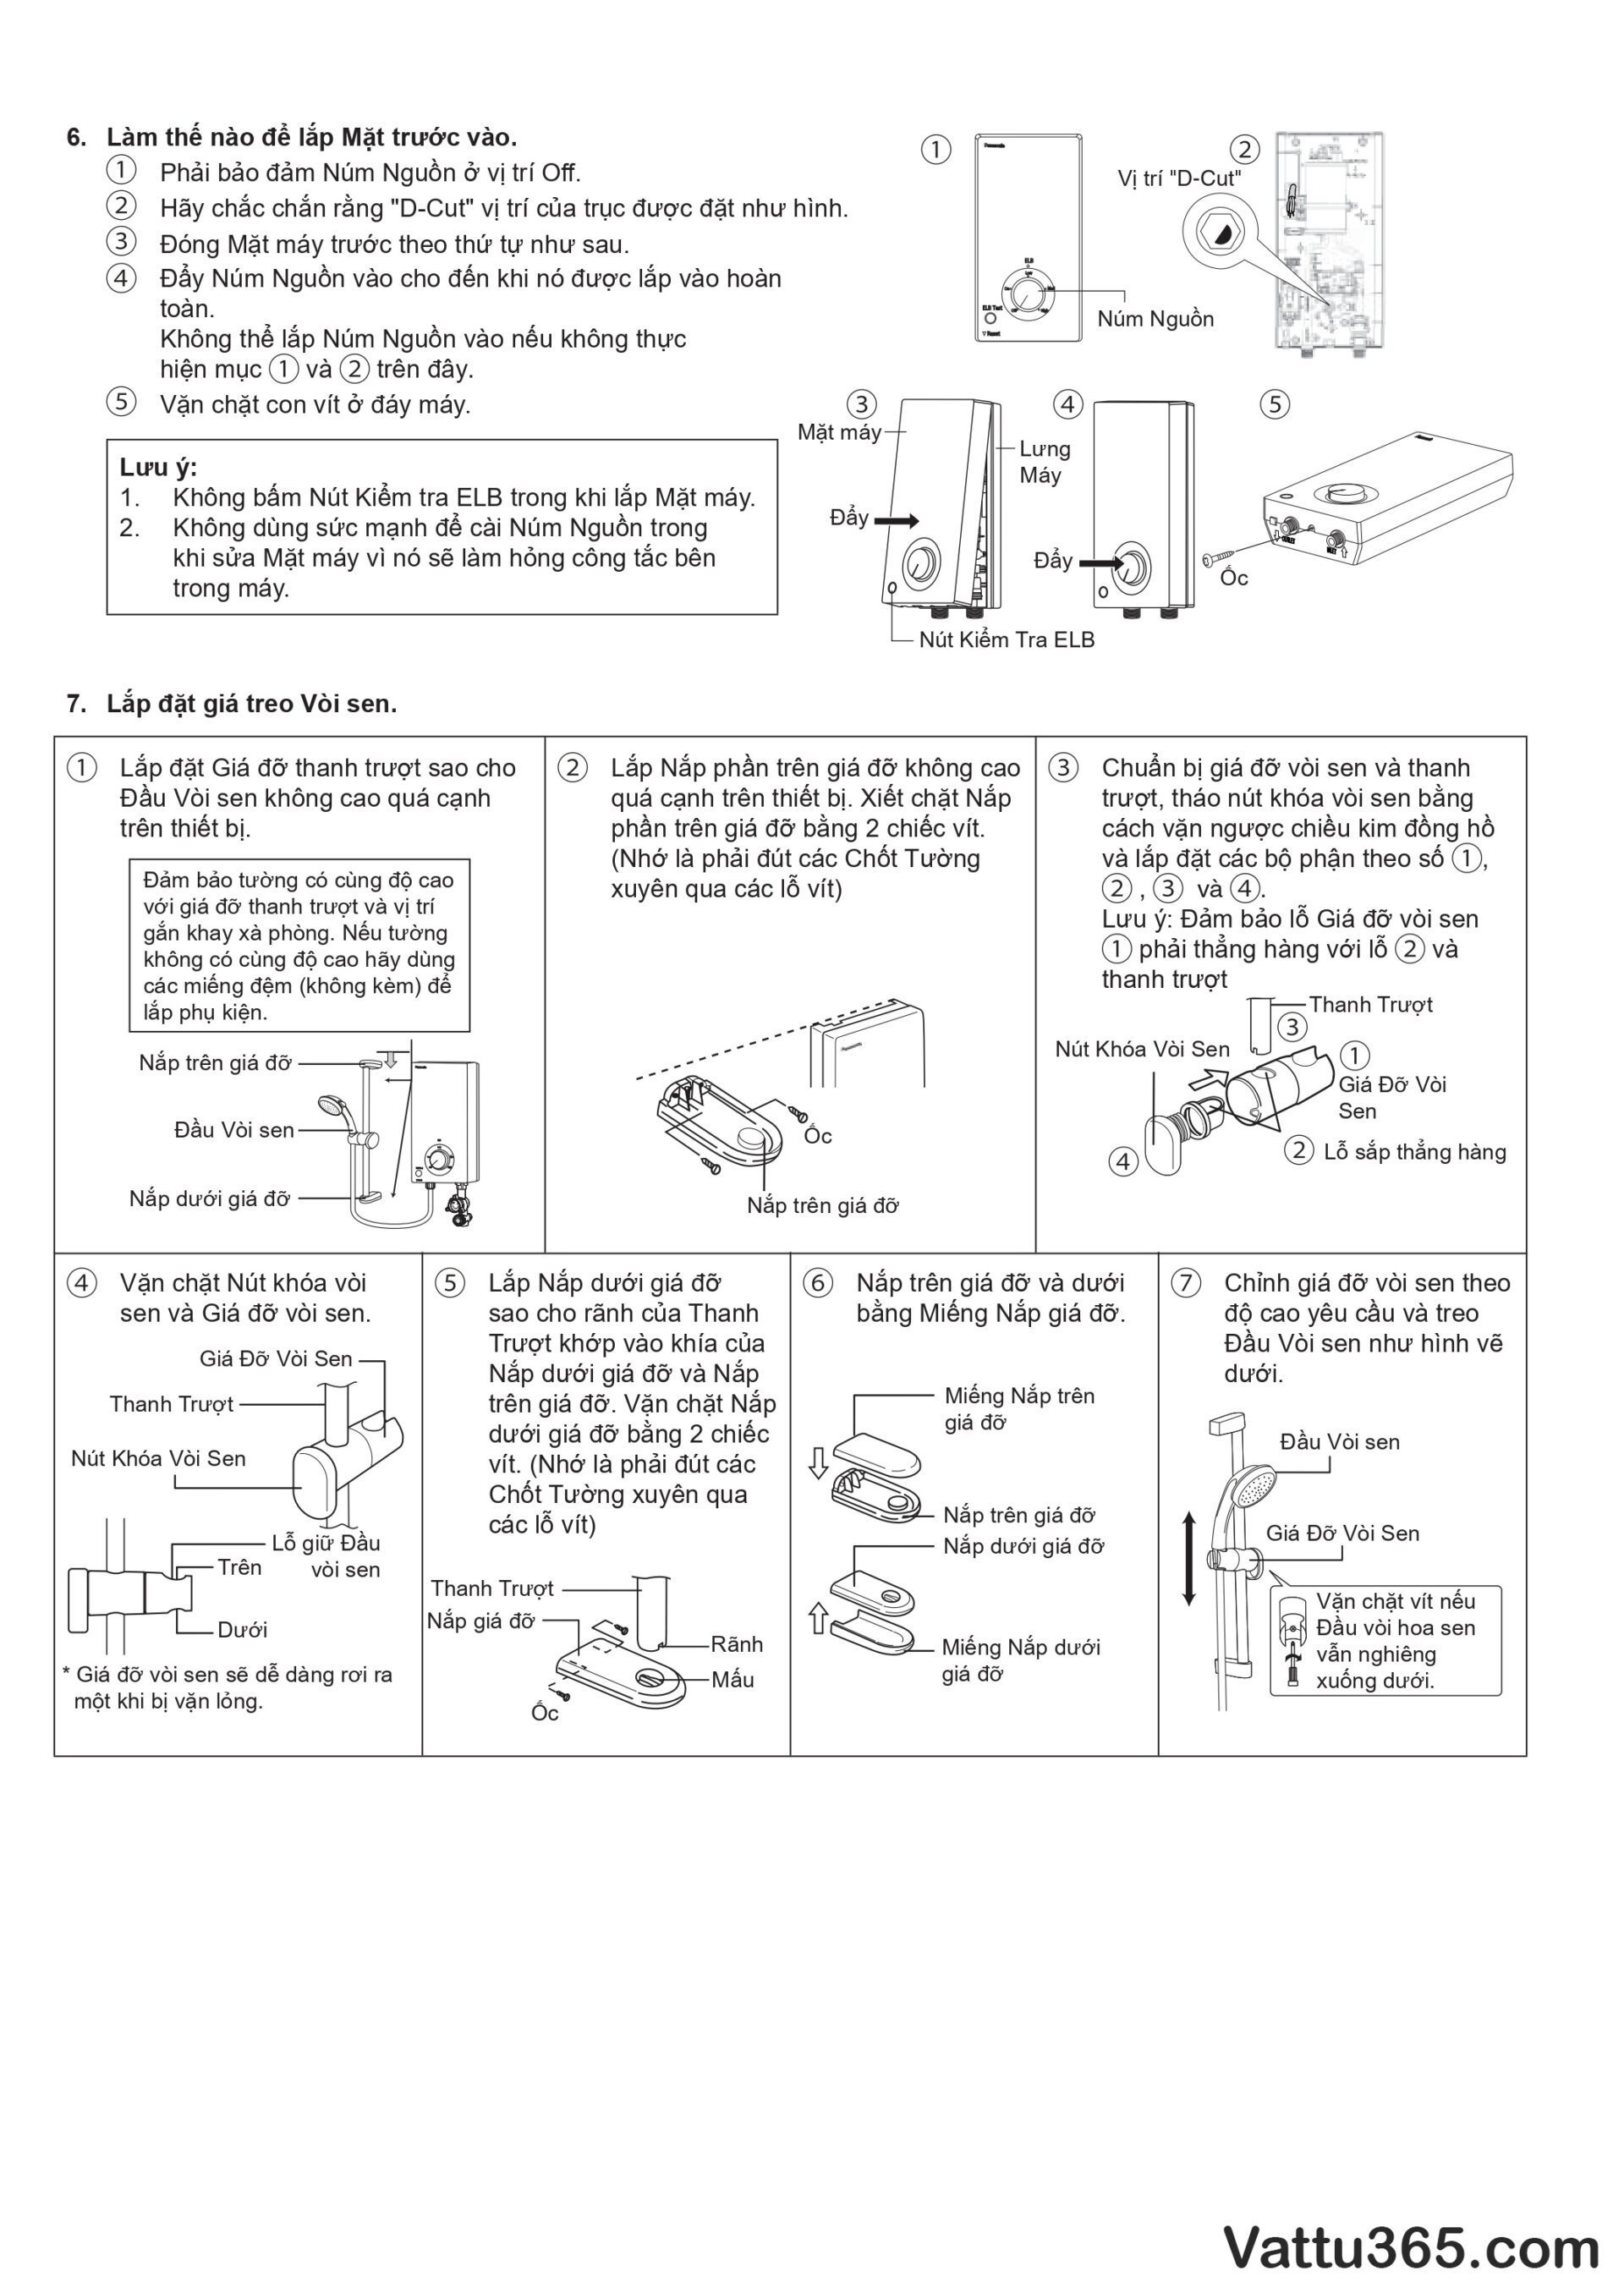 Hướng dẫn sử dụng và lắp đặt máy nước nóng Panasonic V-Series - Trang 15/16